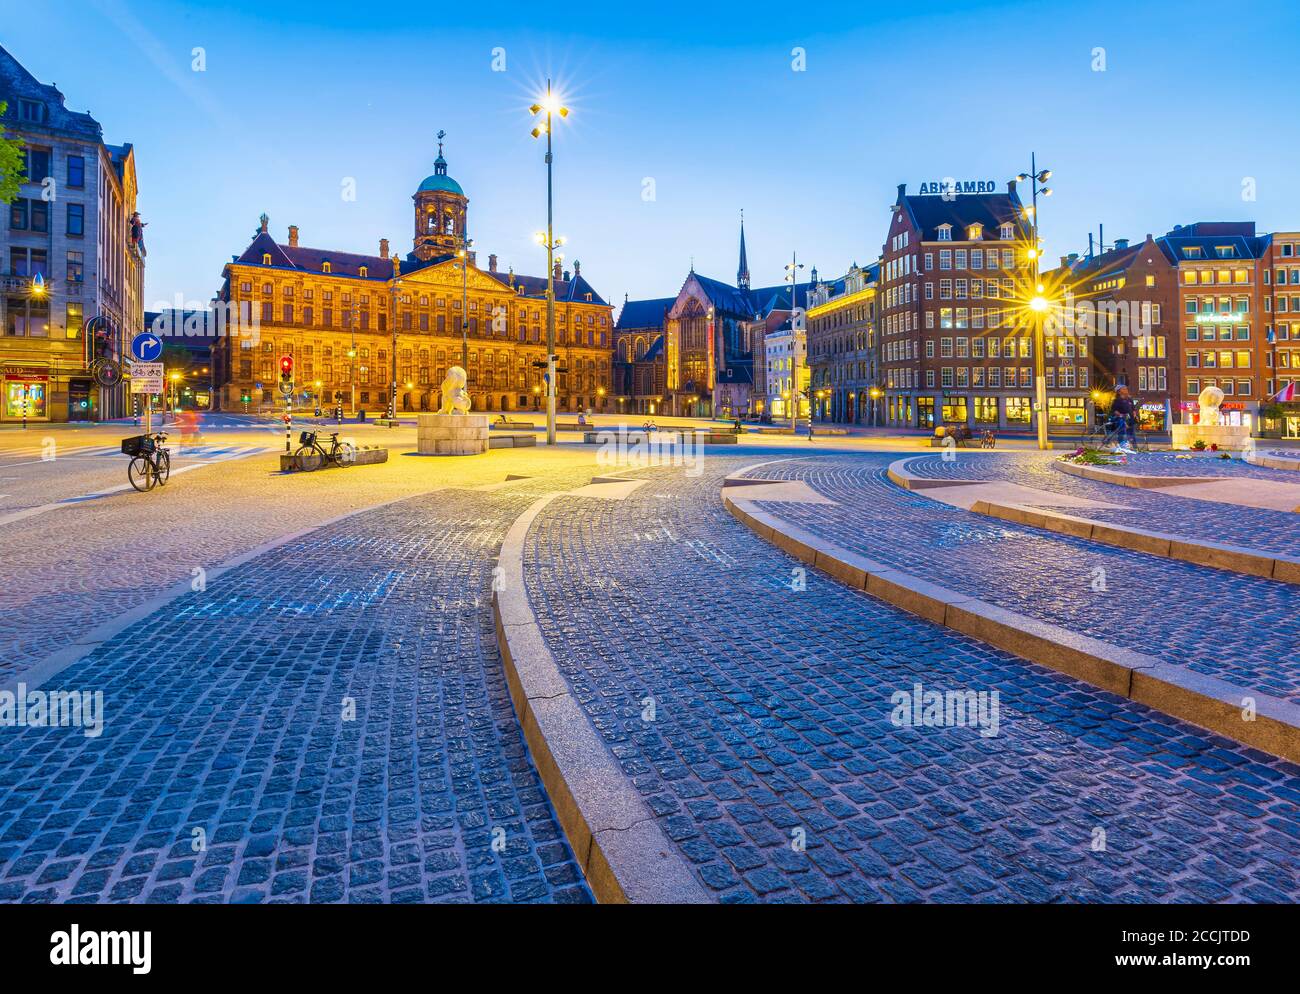 Tramonto a piazza Dam Amsterdam Paesi Bassi. Il palazzo reale è illuminato. Meta turistica popolare. Foto Stock